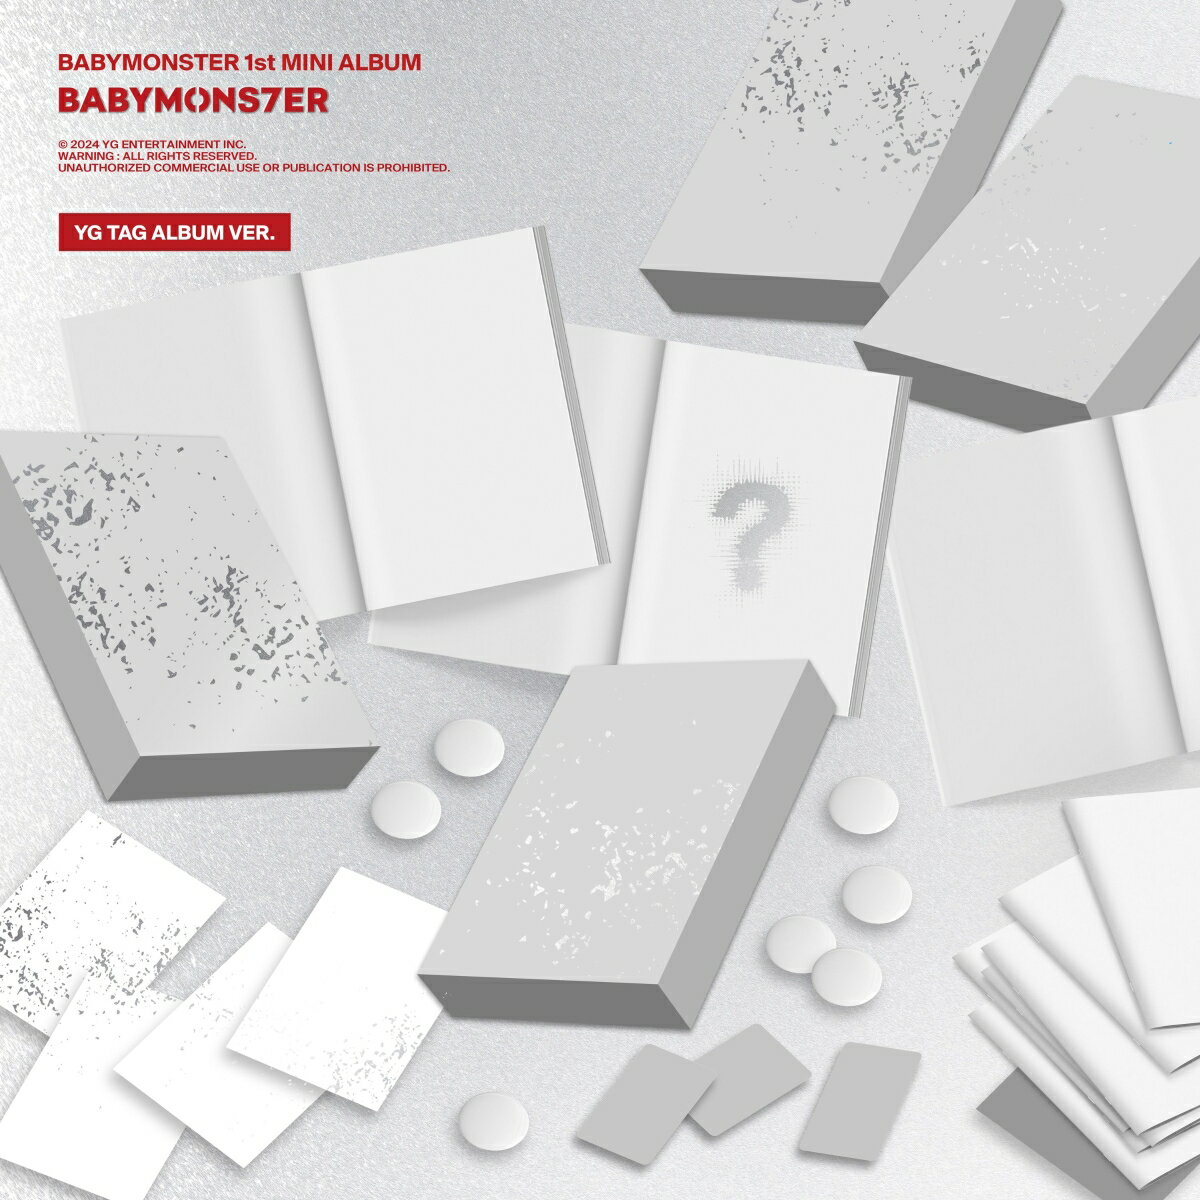 【楽天ブックス限定先着特典】【輸入盤】BABYMONSTER 1st MINI ALBUM [BABYMONS7ER] YG TAG ALBUM VER. (ASA VER.)(オリジナルL判ブロマイド(Type-B絵柄 / 全7種からランダムで1枚)) [ BABYMONSTER ]